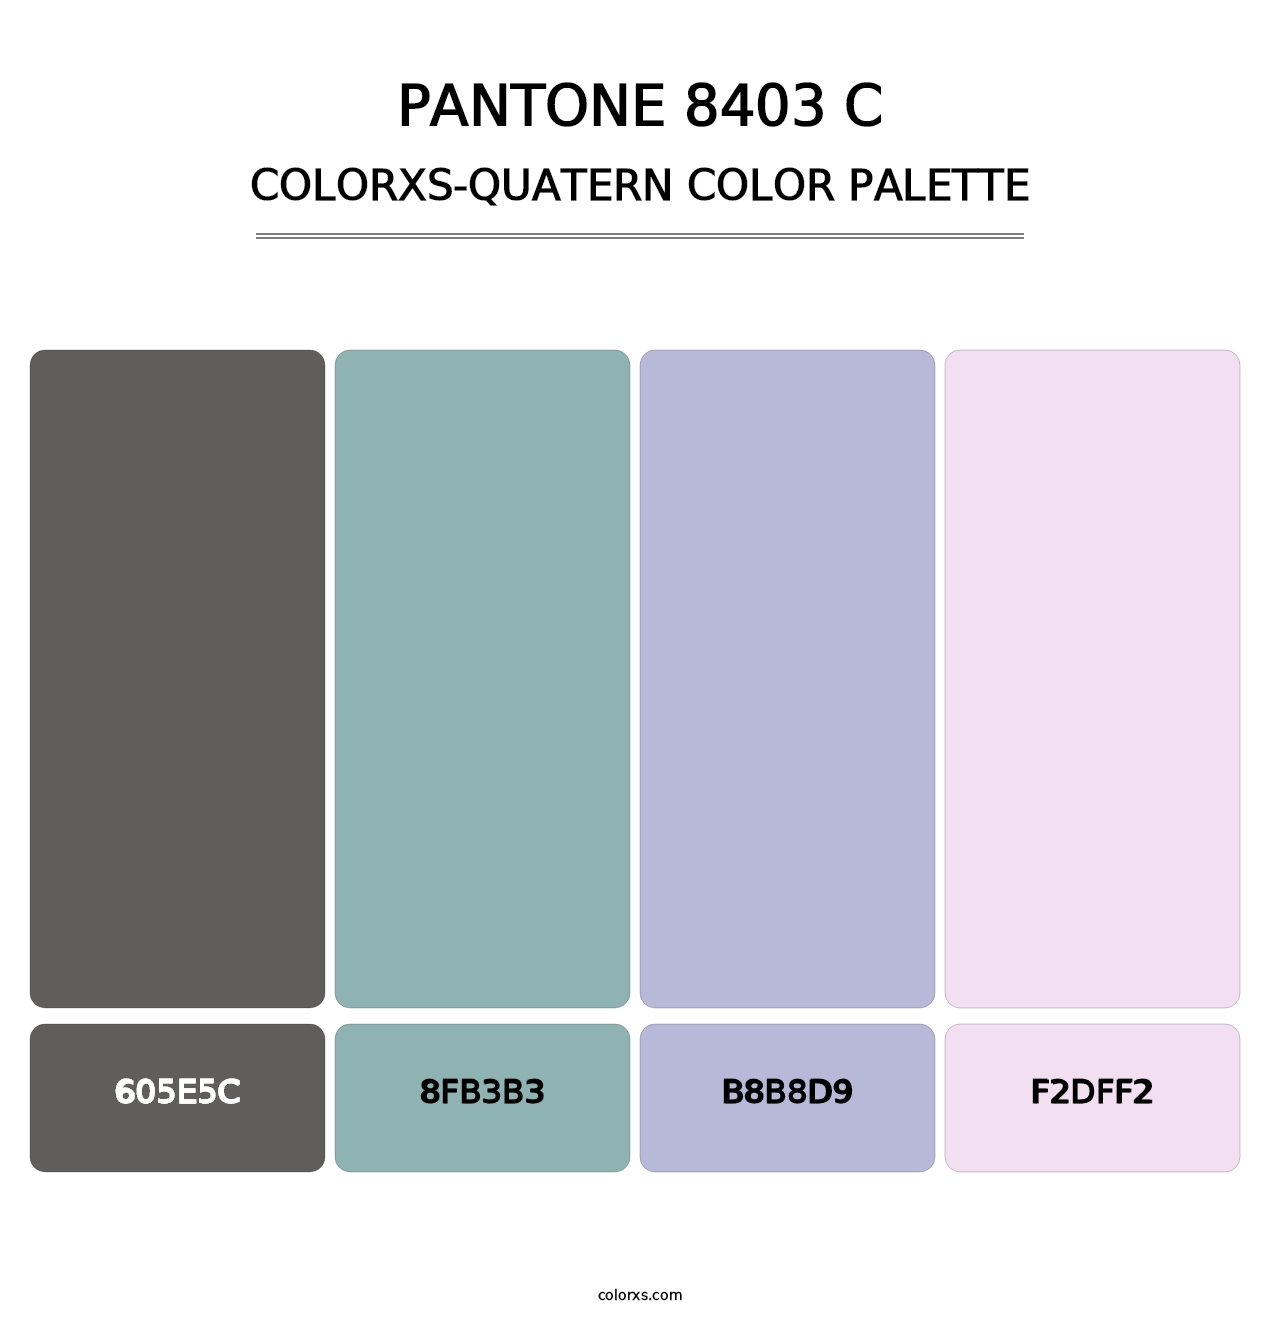 PANTONE 8403 C - Colorxs Quatern Palette